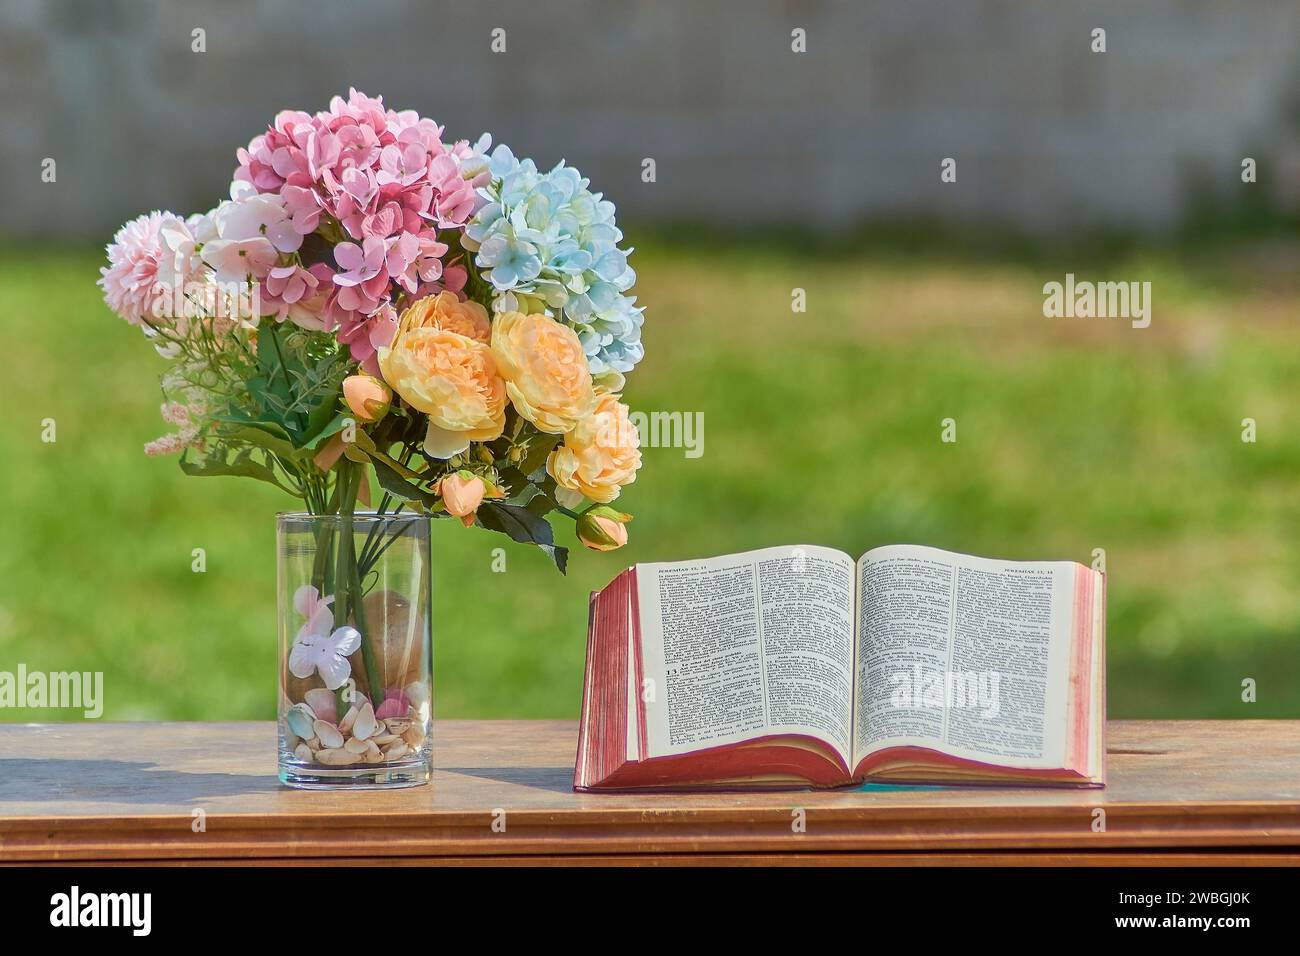 Libro della bibbia aperto, con fiori di vari colori accanto ad esso. La bibbia e' su un tavolo di medera, sfondo fuori fuoco. Concetto cristiano Foto Stock